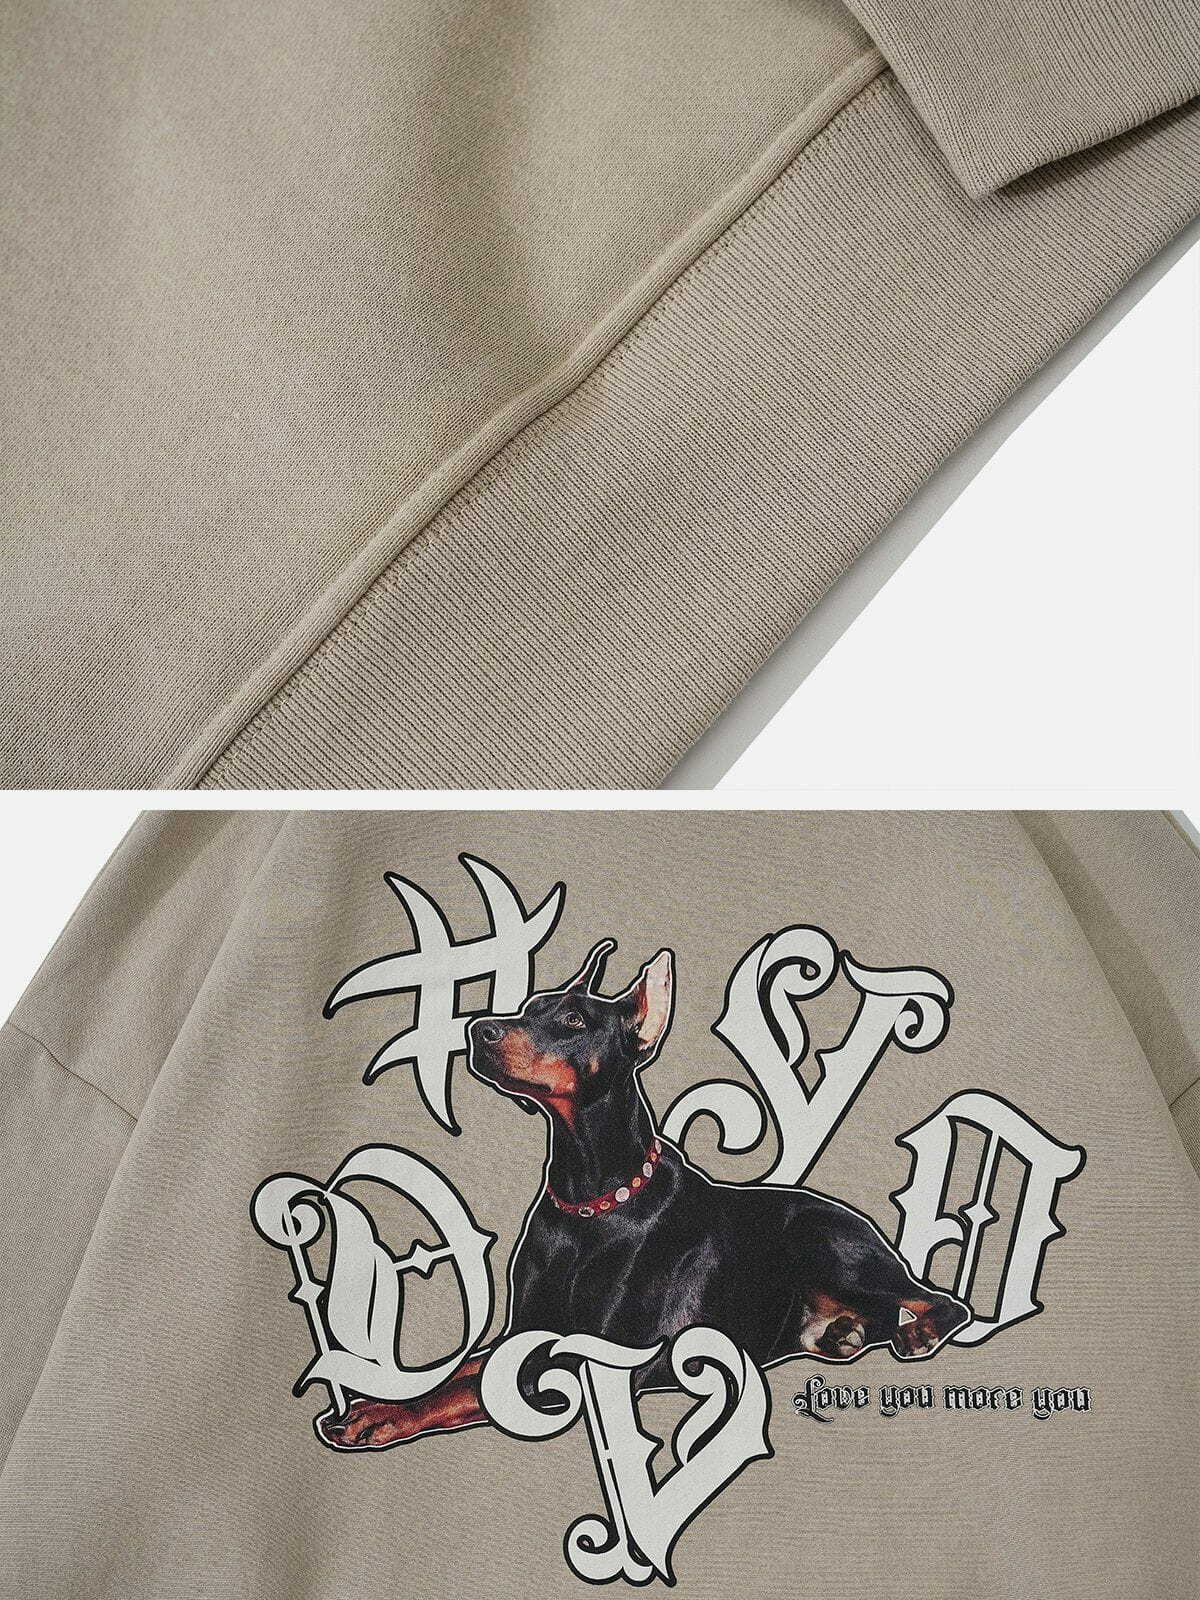 dynamic doberman print hoodie edgy streetwear 7028